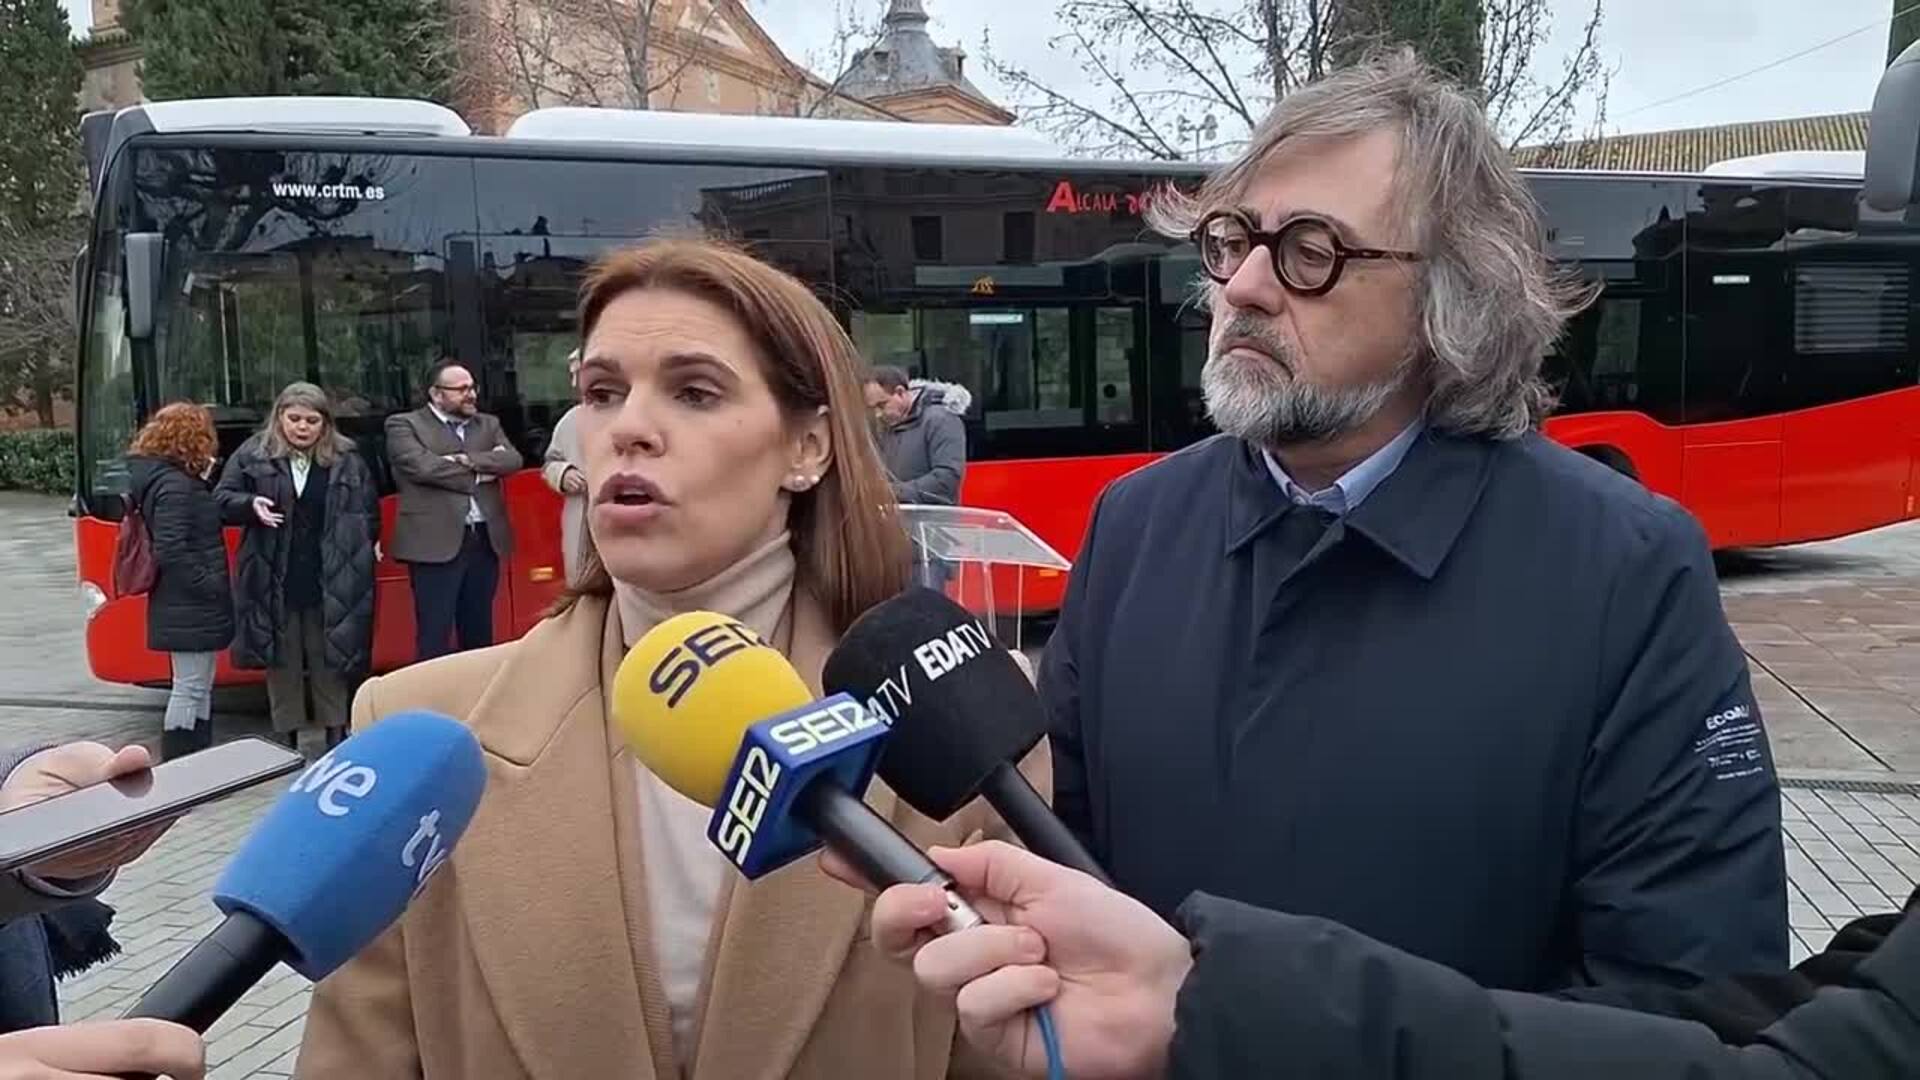 La alcaldesa de Alcalá recalca que "es irrefutable" que las denuncias por agresión existen